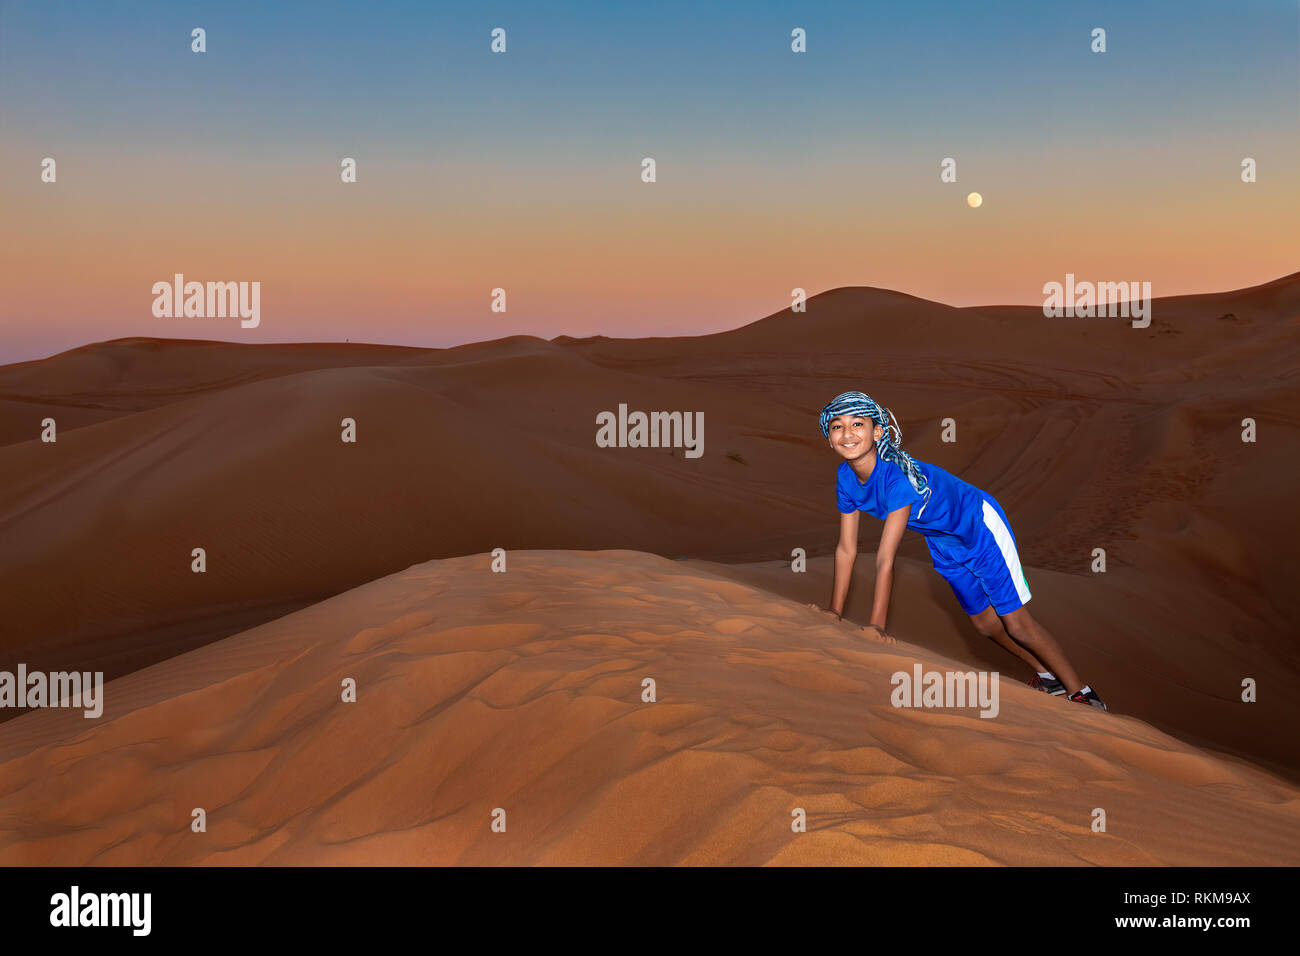 Jeune garçon portant un casque d'Oman et à jouer dans les dunes de sable de Dubaï, aux Émirats arabes unis, au coucher du soleil Banque D'Images